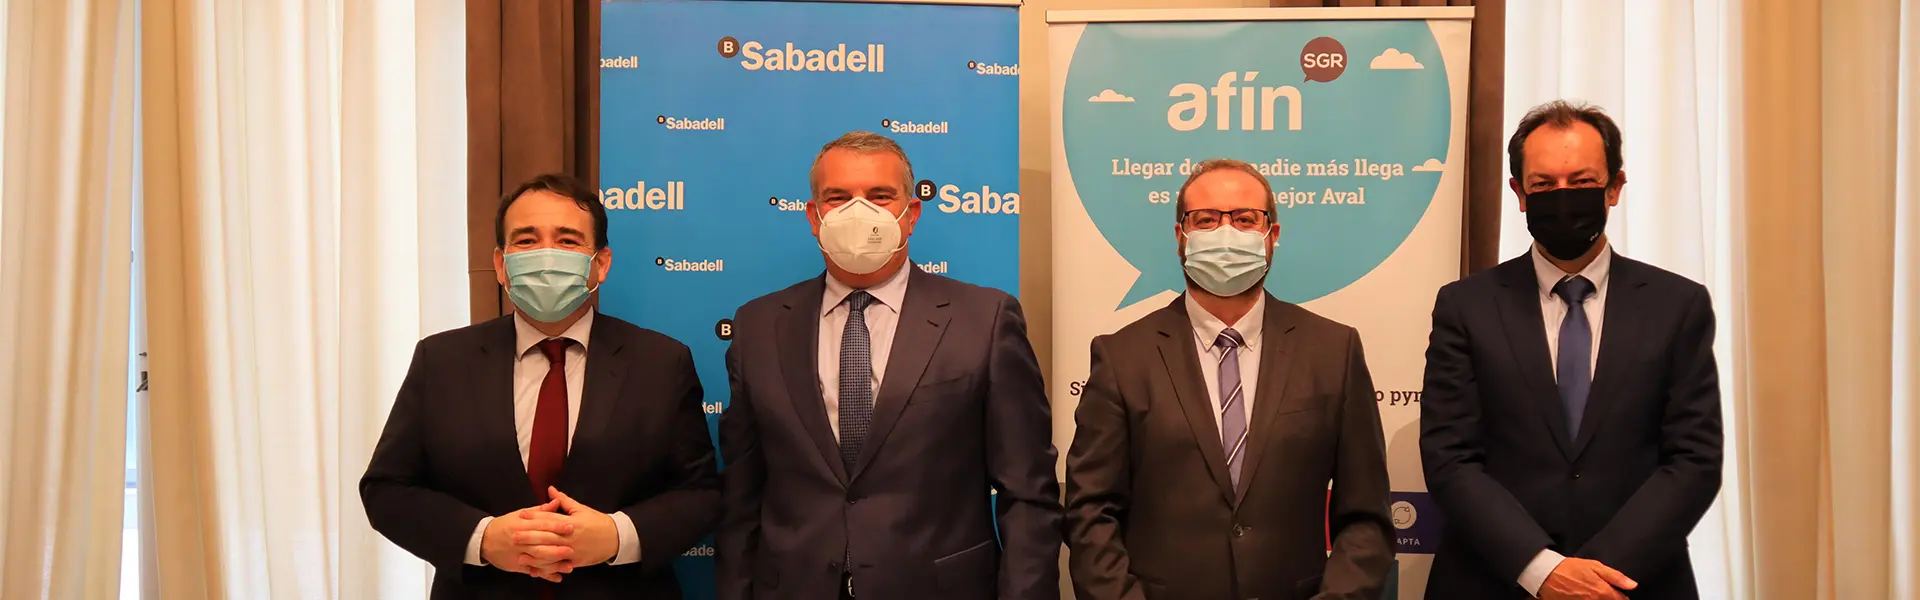 Banco Sabadell aumenta su linea de prestamos con Afin SGR hemeroteca cesgar web